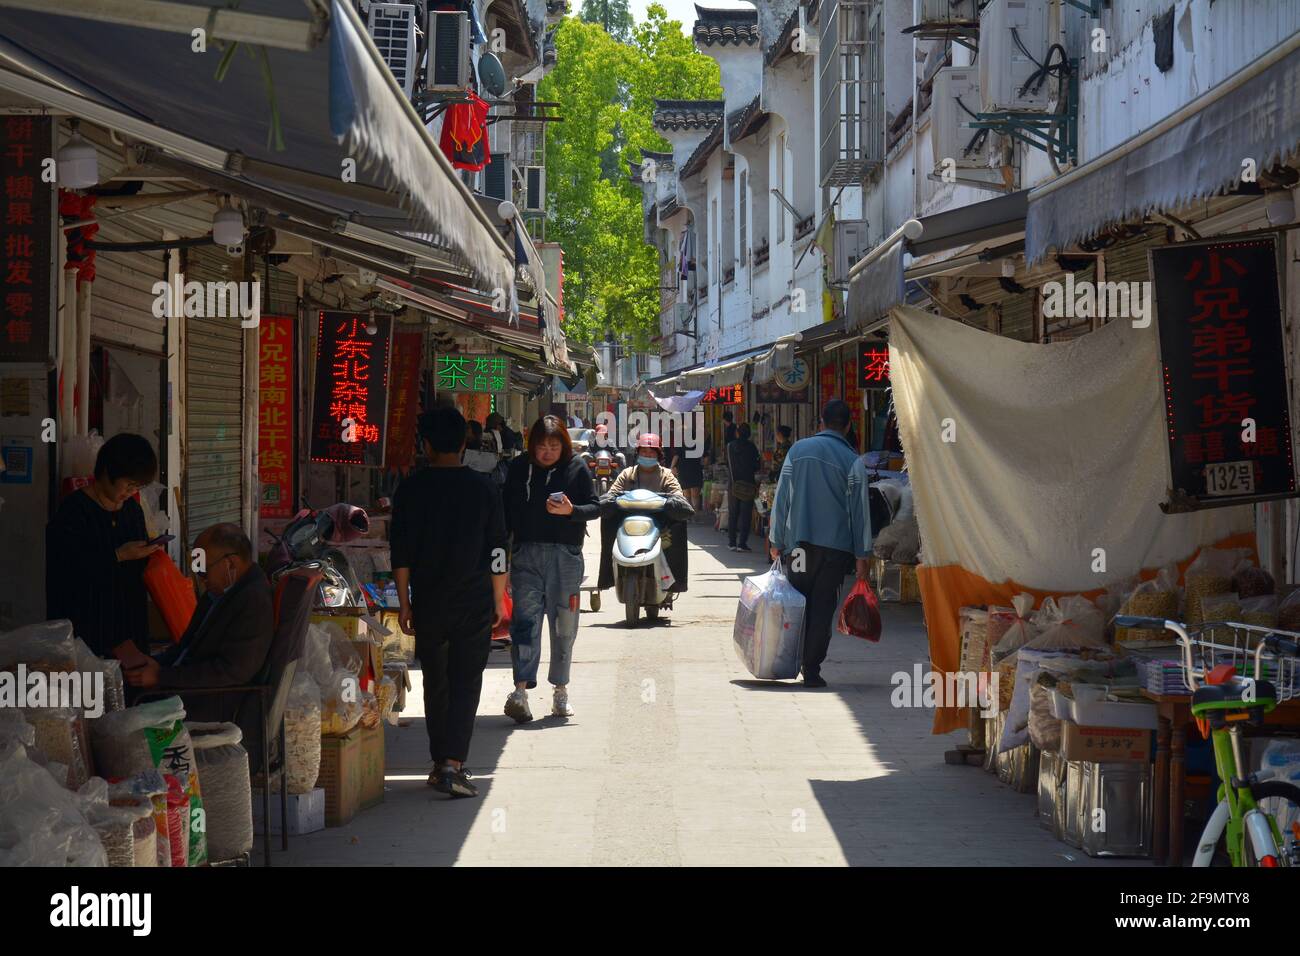 Todos los días se acerca en una pequeña comunidad de China. La gente que va sobre su negocio en las calles estrechas de este área del centro. Foto de stock